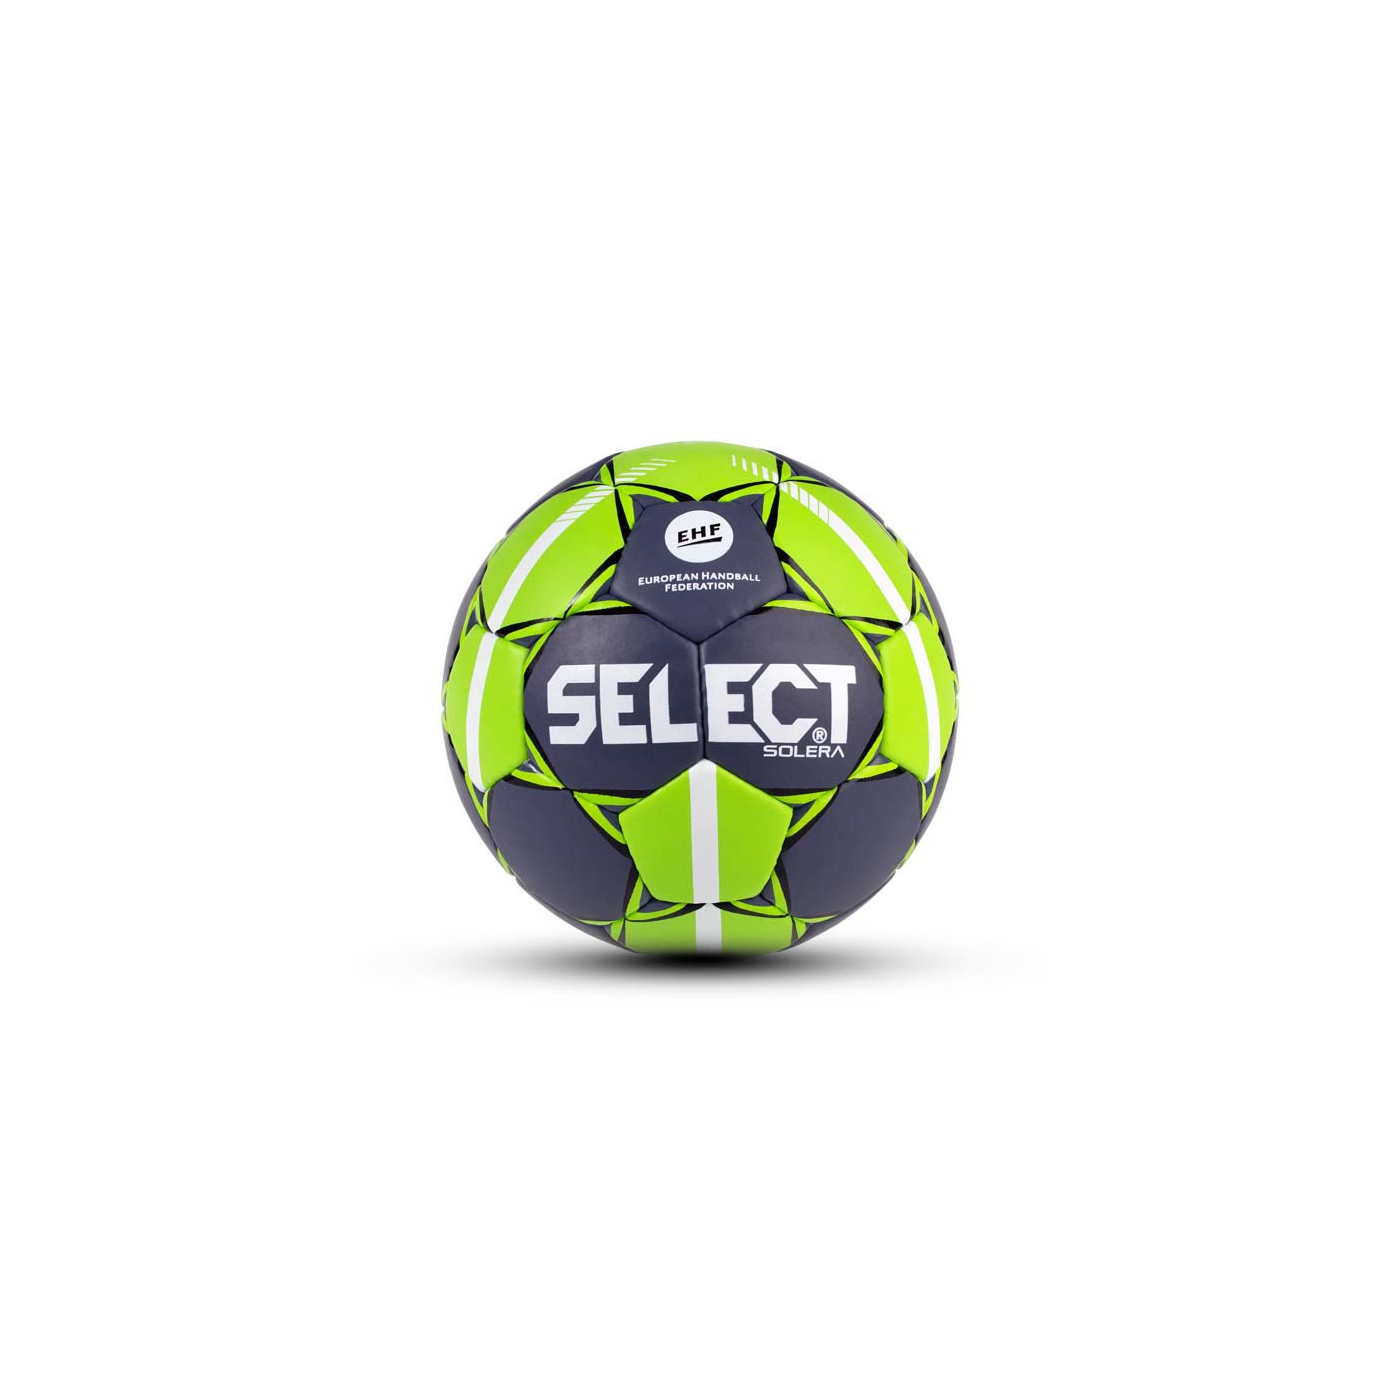 Select Solera | Handball | Trainingsbälle | NEU